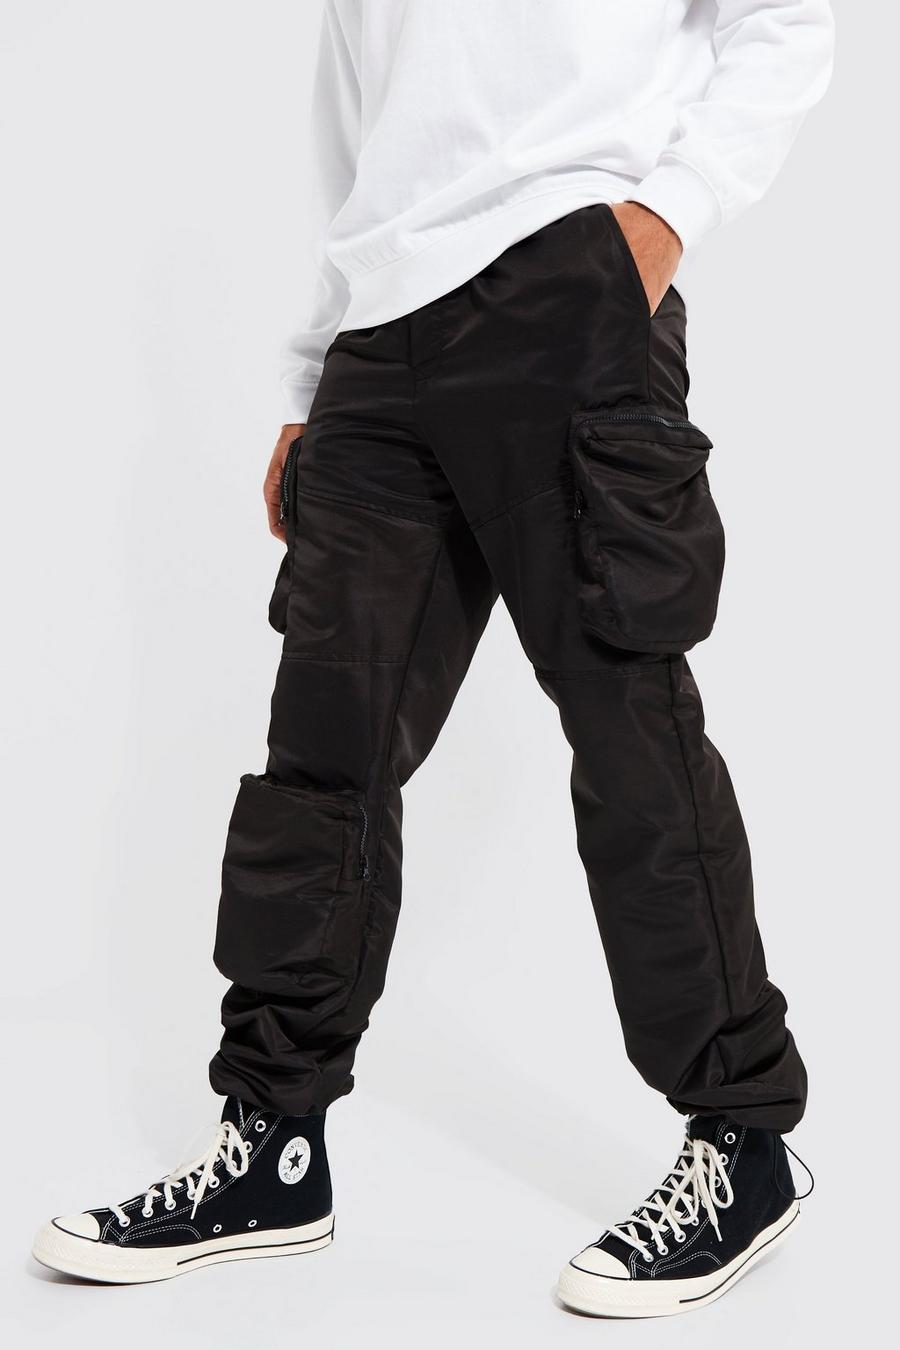 Pantalón Tall cargo holgado estilo obrero de tela shell 3D, Black nero